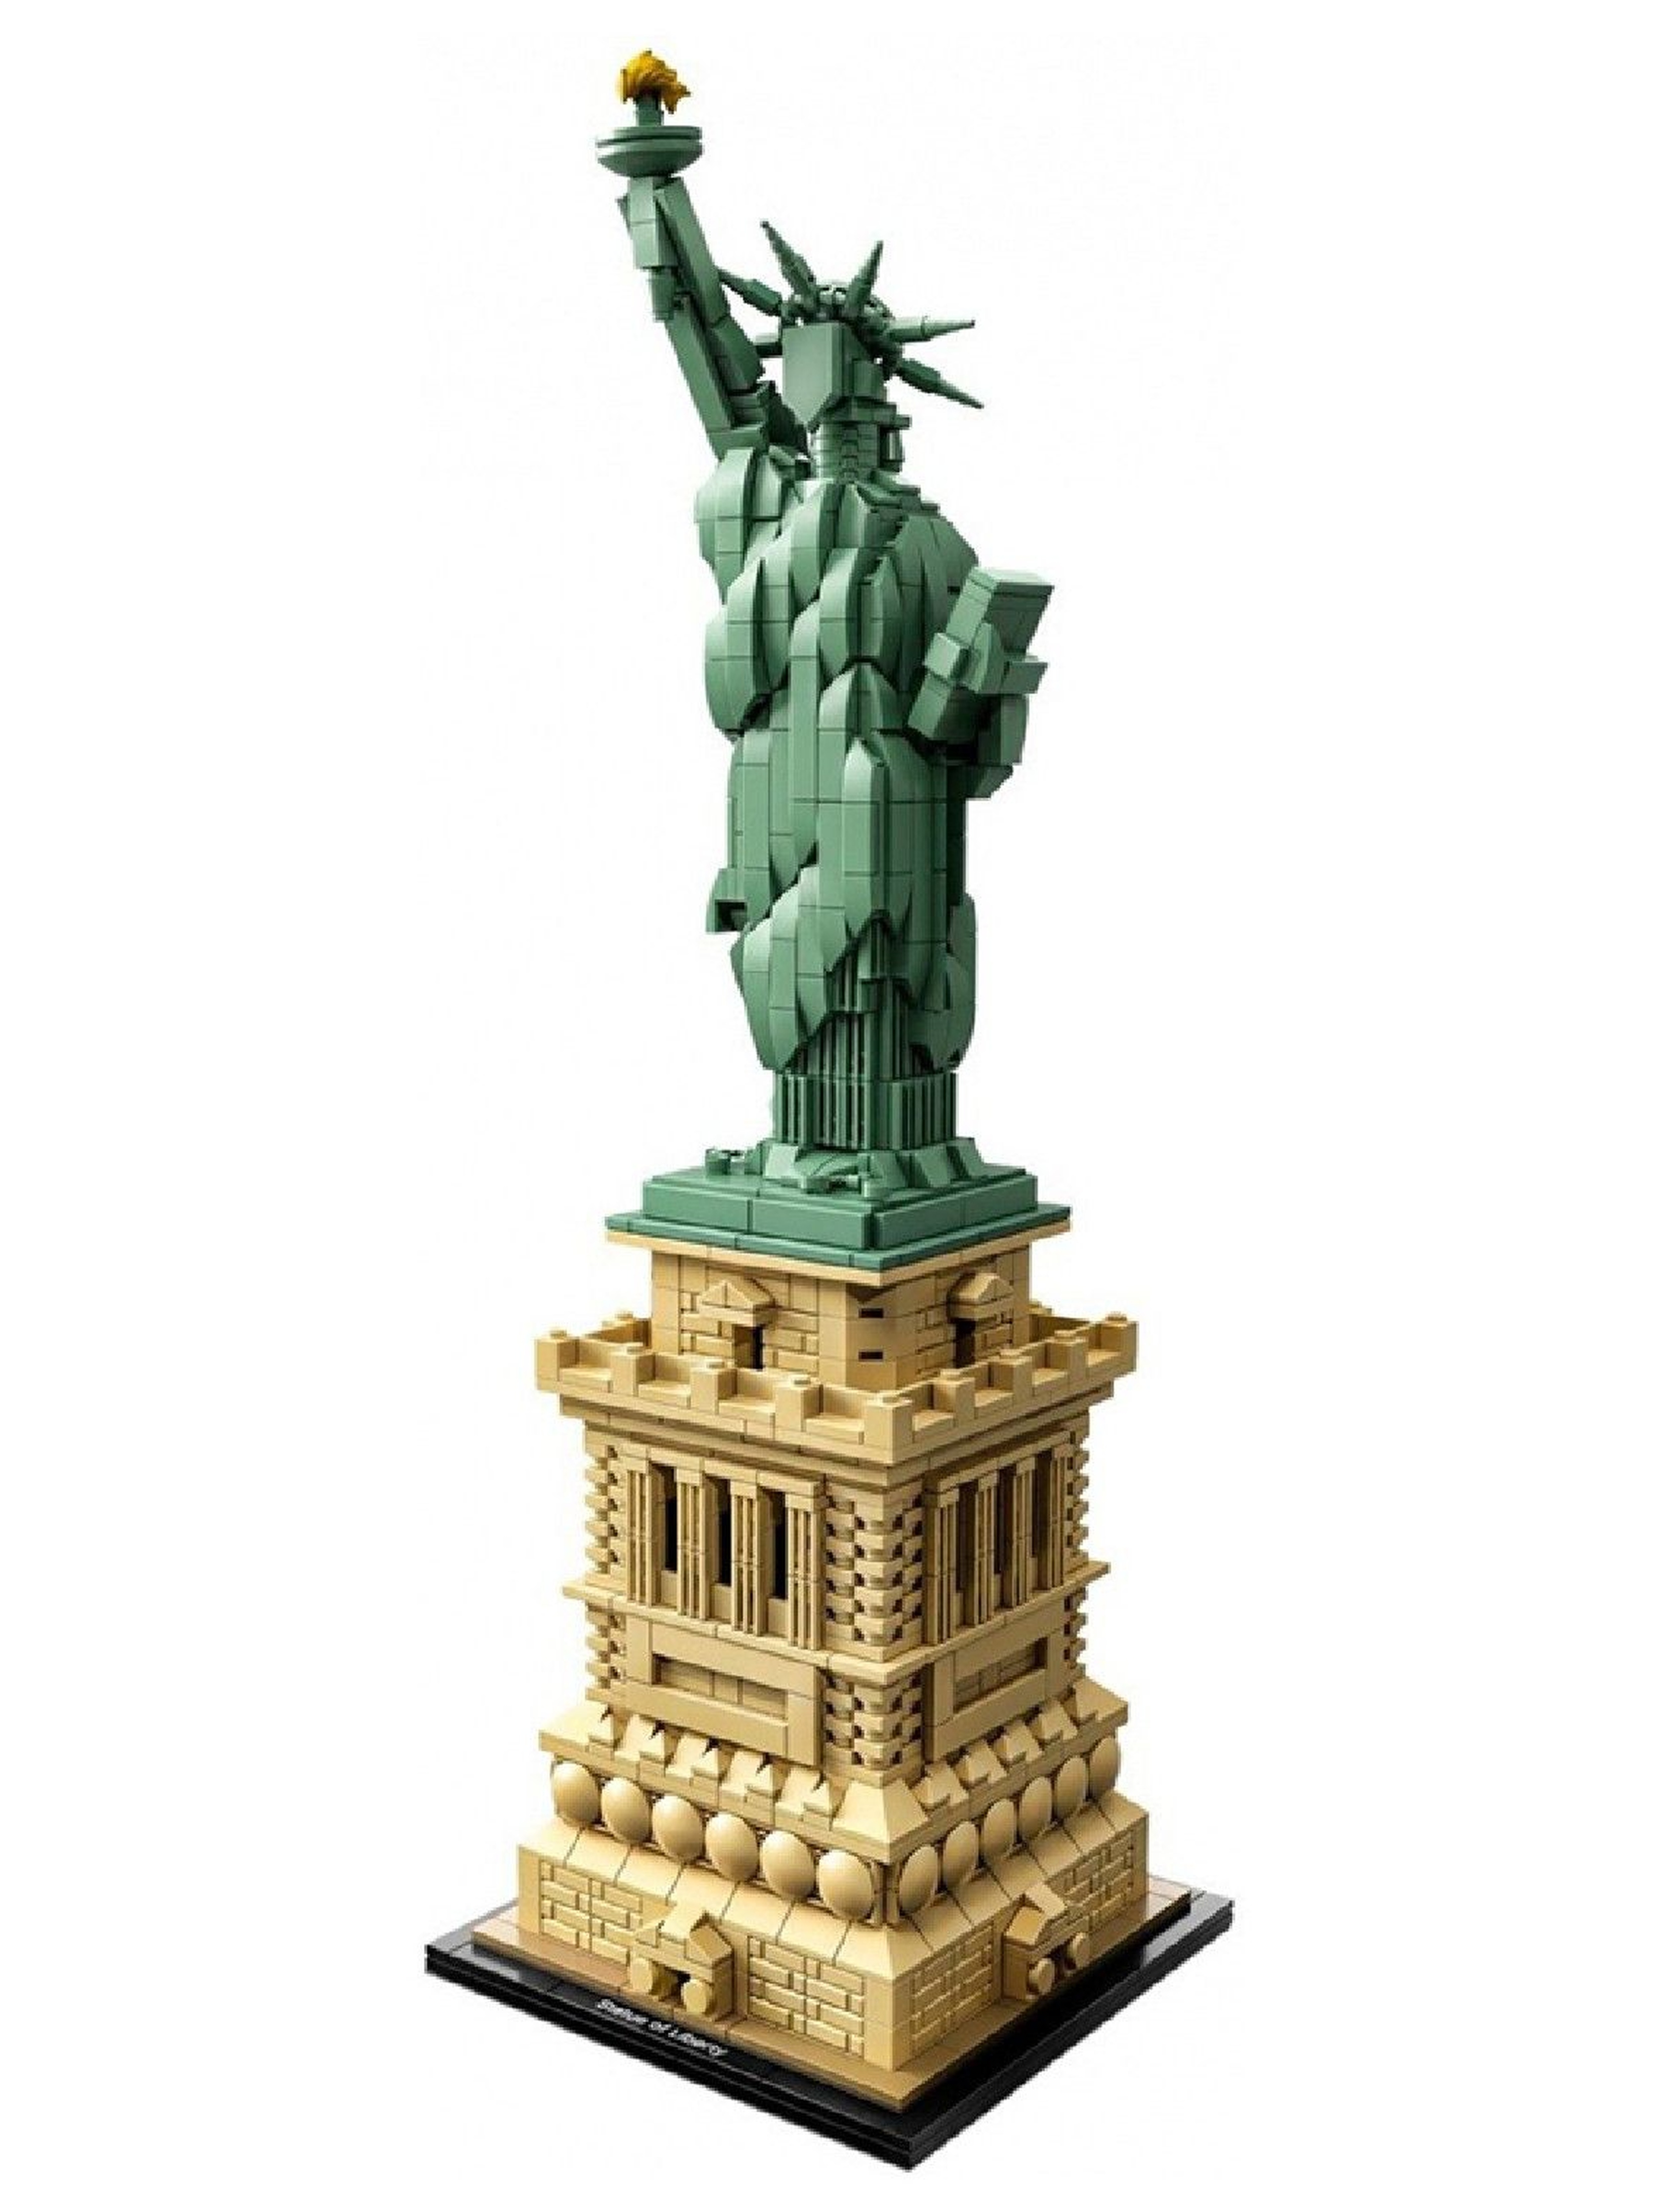 LEGO Architecture 21042 Statua Wolności